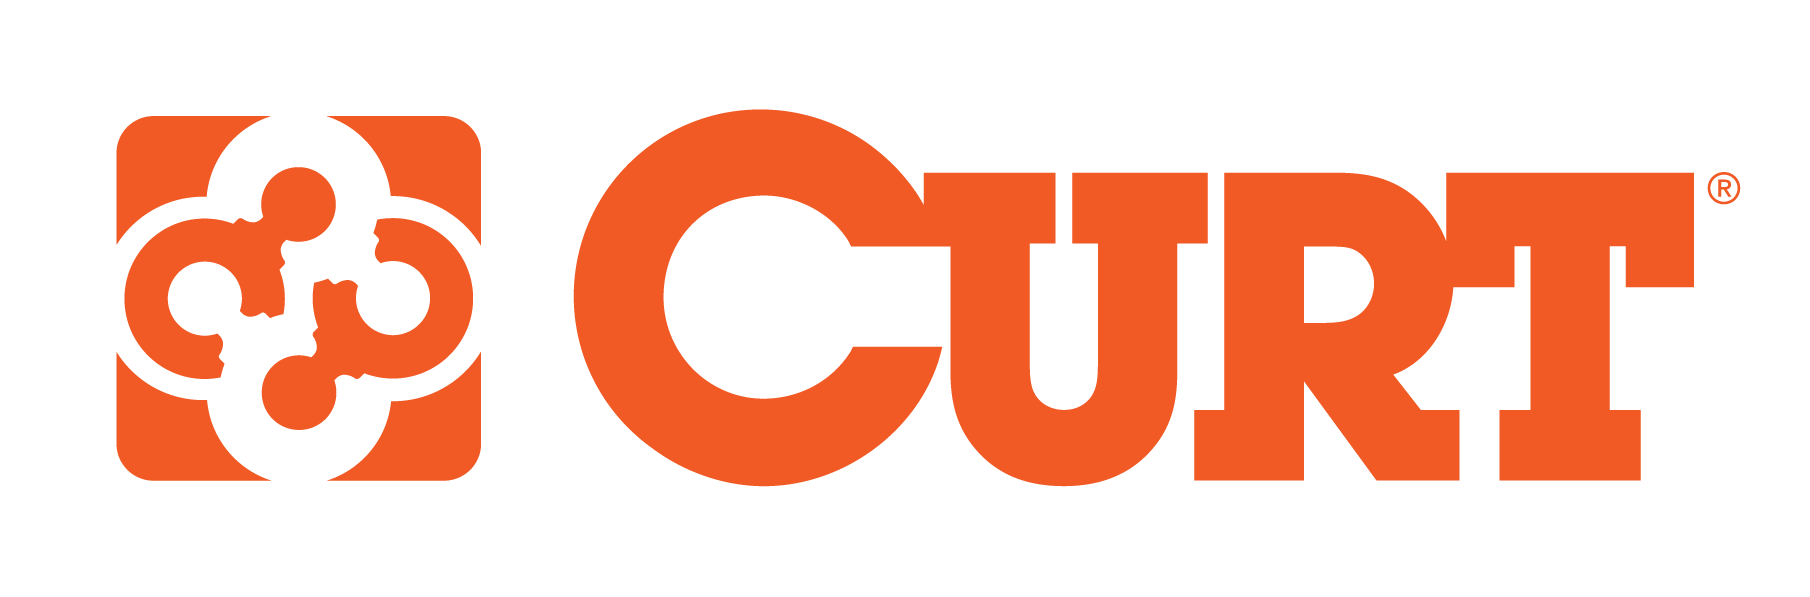 CURT Logo (1c_orange on transparent)